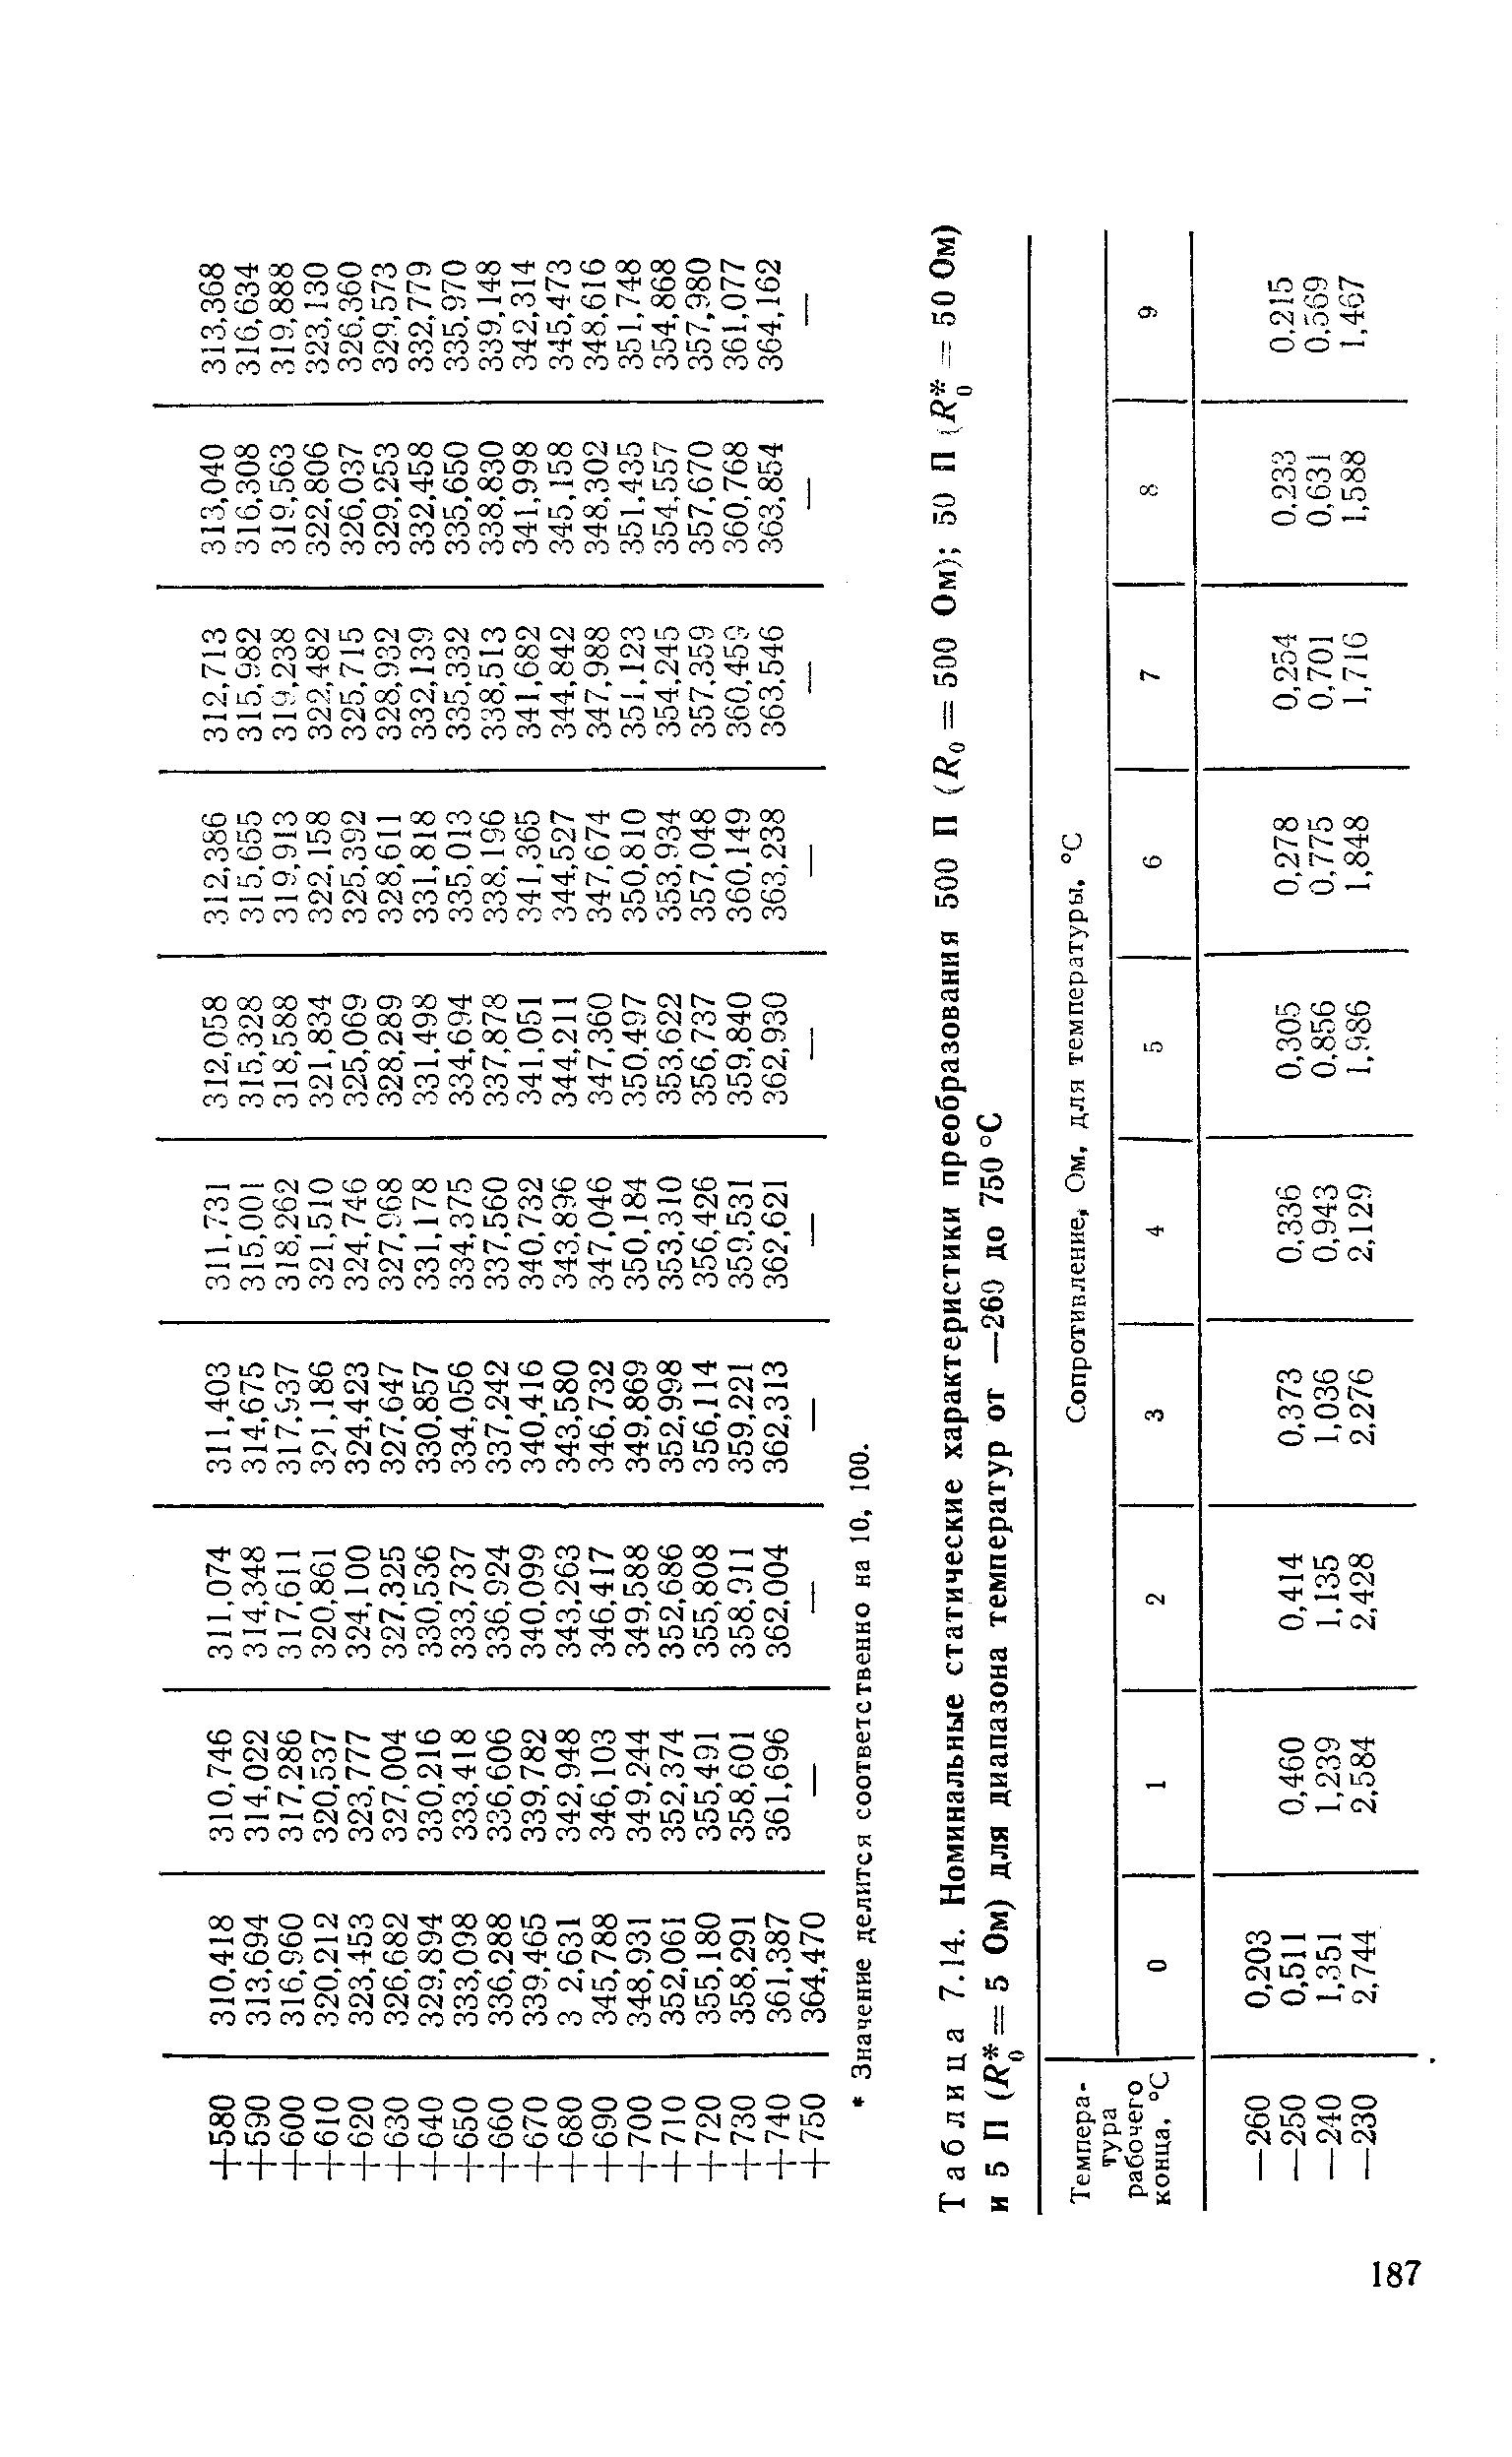 Таблица 7.14. Номинальные статические характеристики преобразования 500 П = 00 Ом) 50 П1 -50Ом) и 5 П Ом) для диапазона температур от —260 до 750 °С
